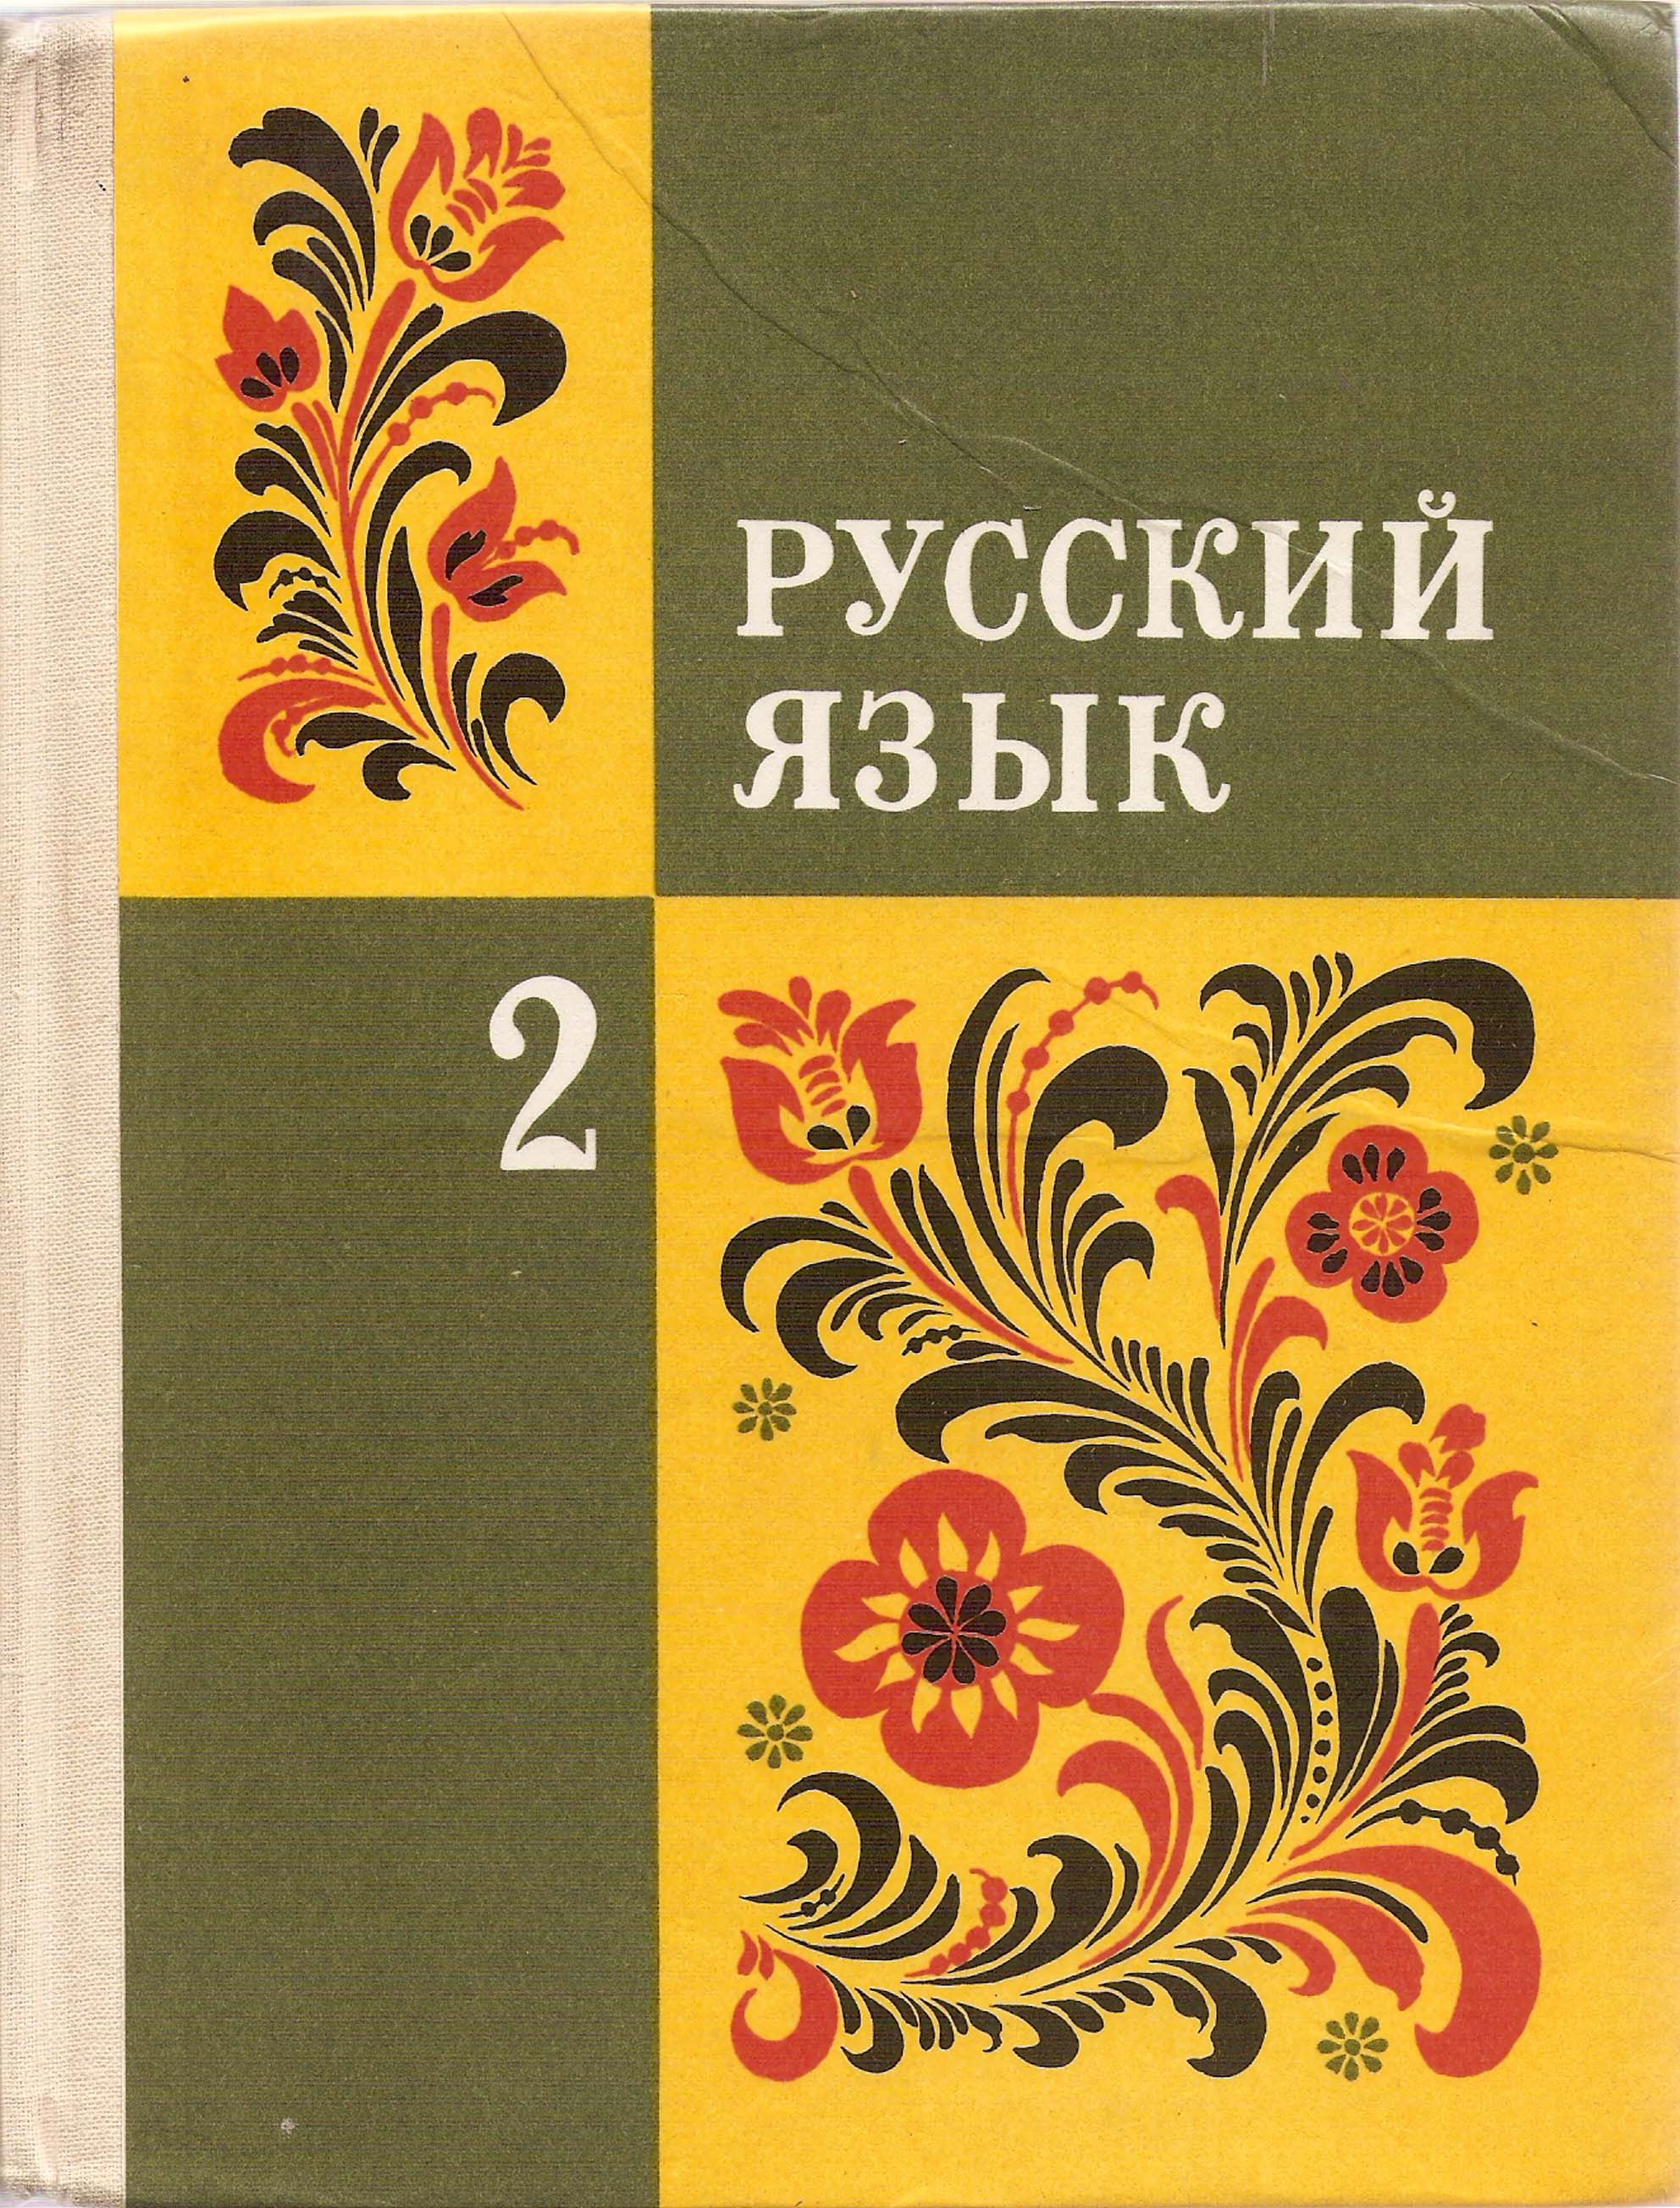 2-Русский-язык.jpg